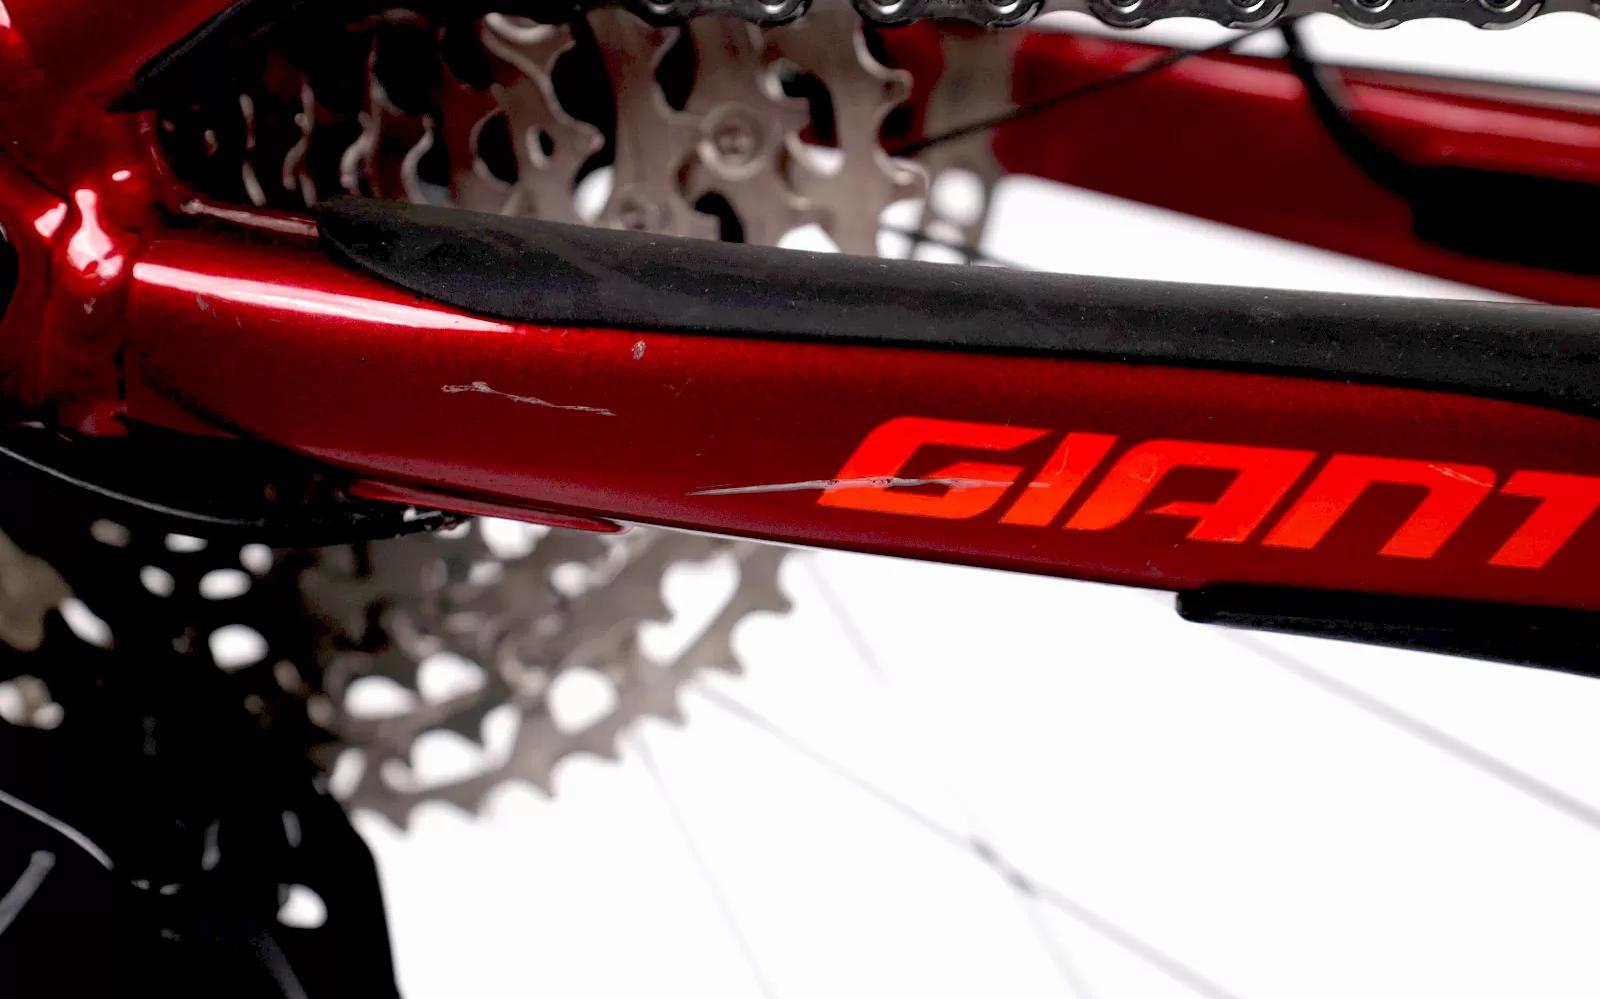 E-Bike Giant Reign E+, Usata, 2020, Valencia